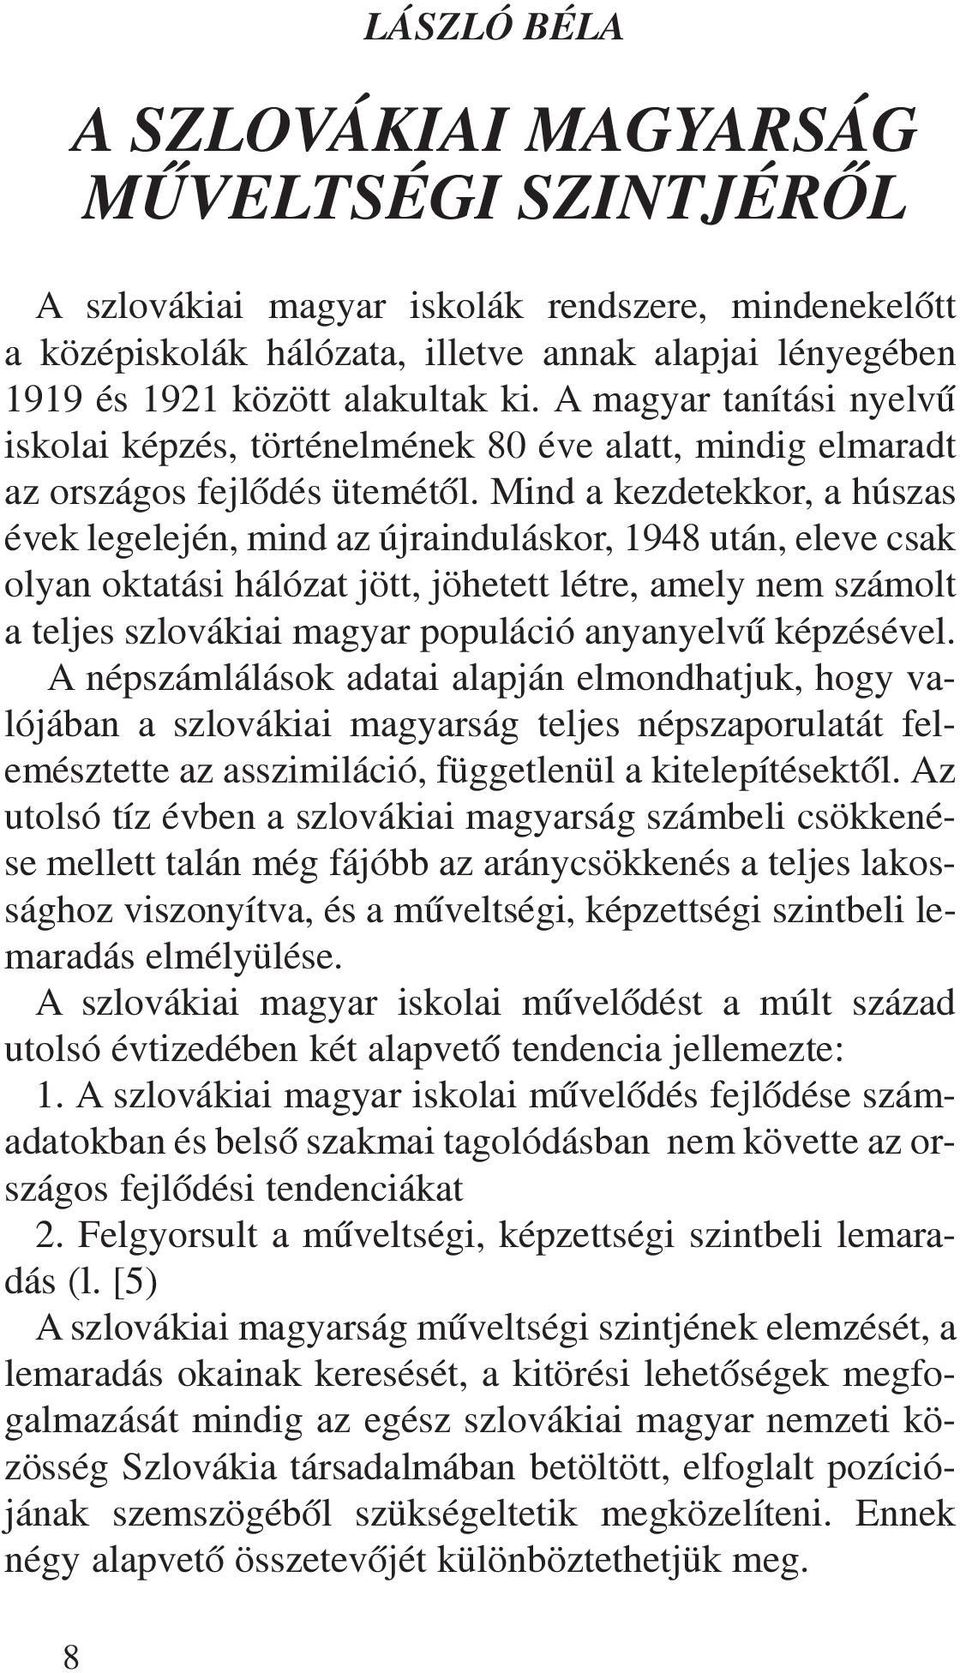 Mind a kezdetekkor, a húszas évek legelején, mind az újrainduláskor, 1948 után, eleve csak olyan oktatási hálózat jött, jöhetett létre, amely nem számolt a teljes szlovákiai magyar populáció